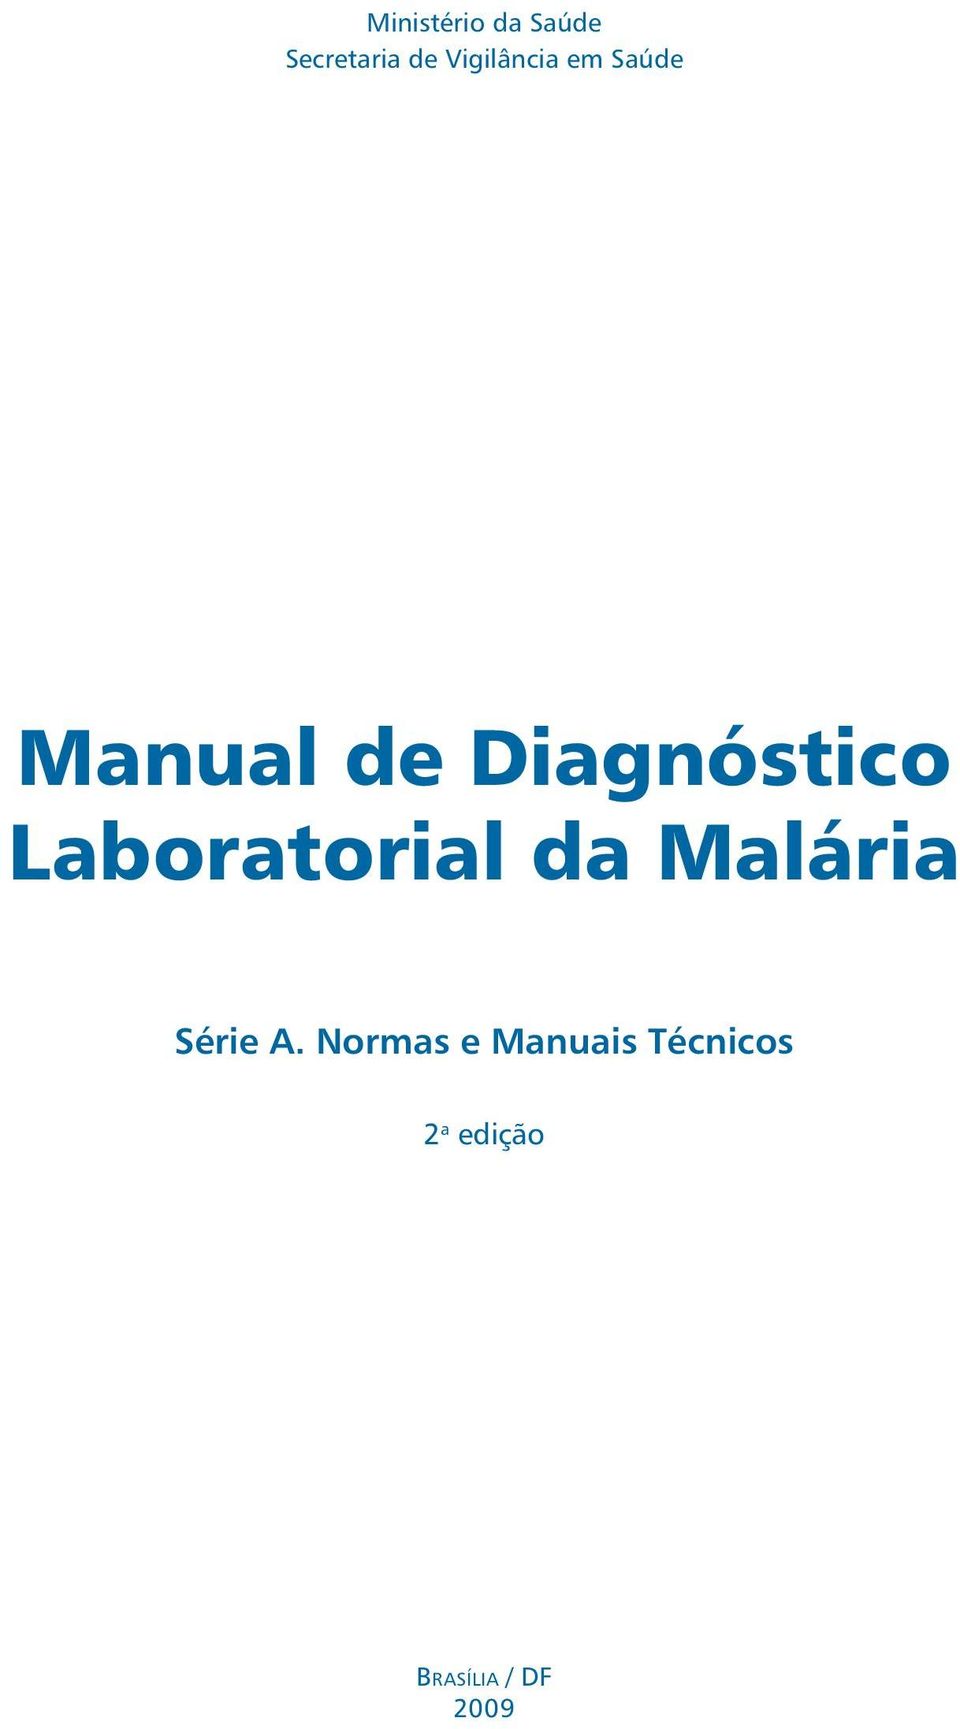 Diagnóstico Laboratorial da Malária